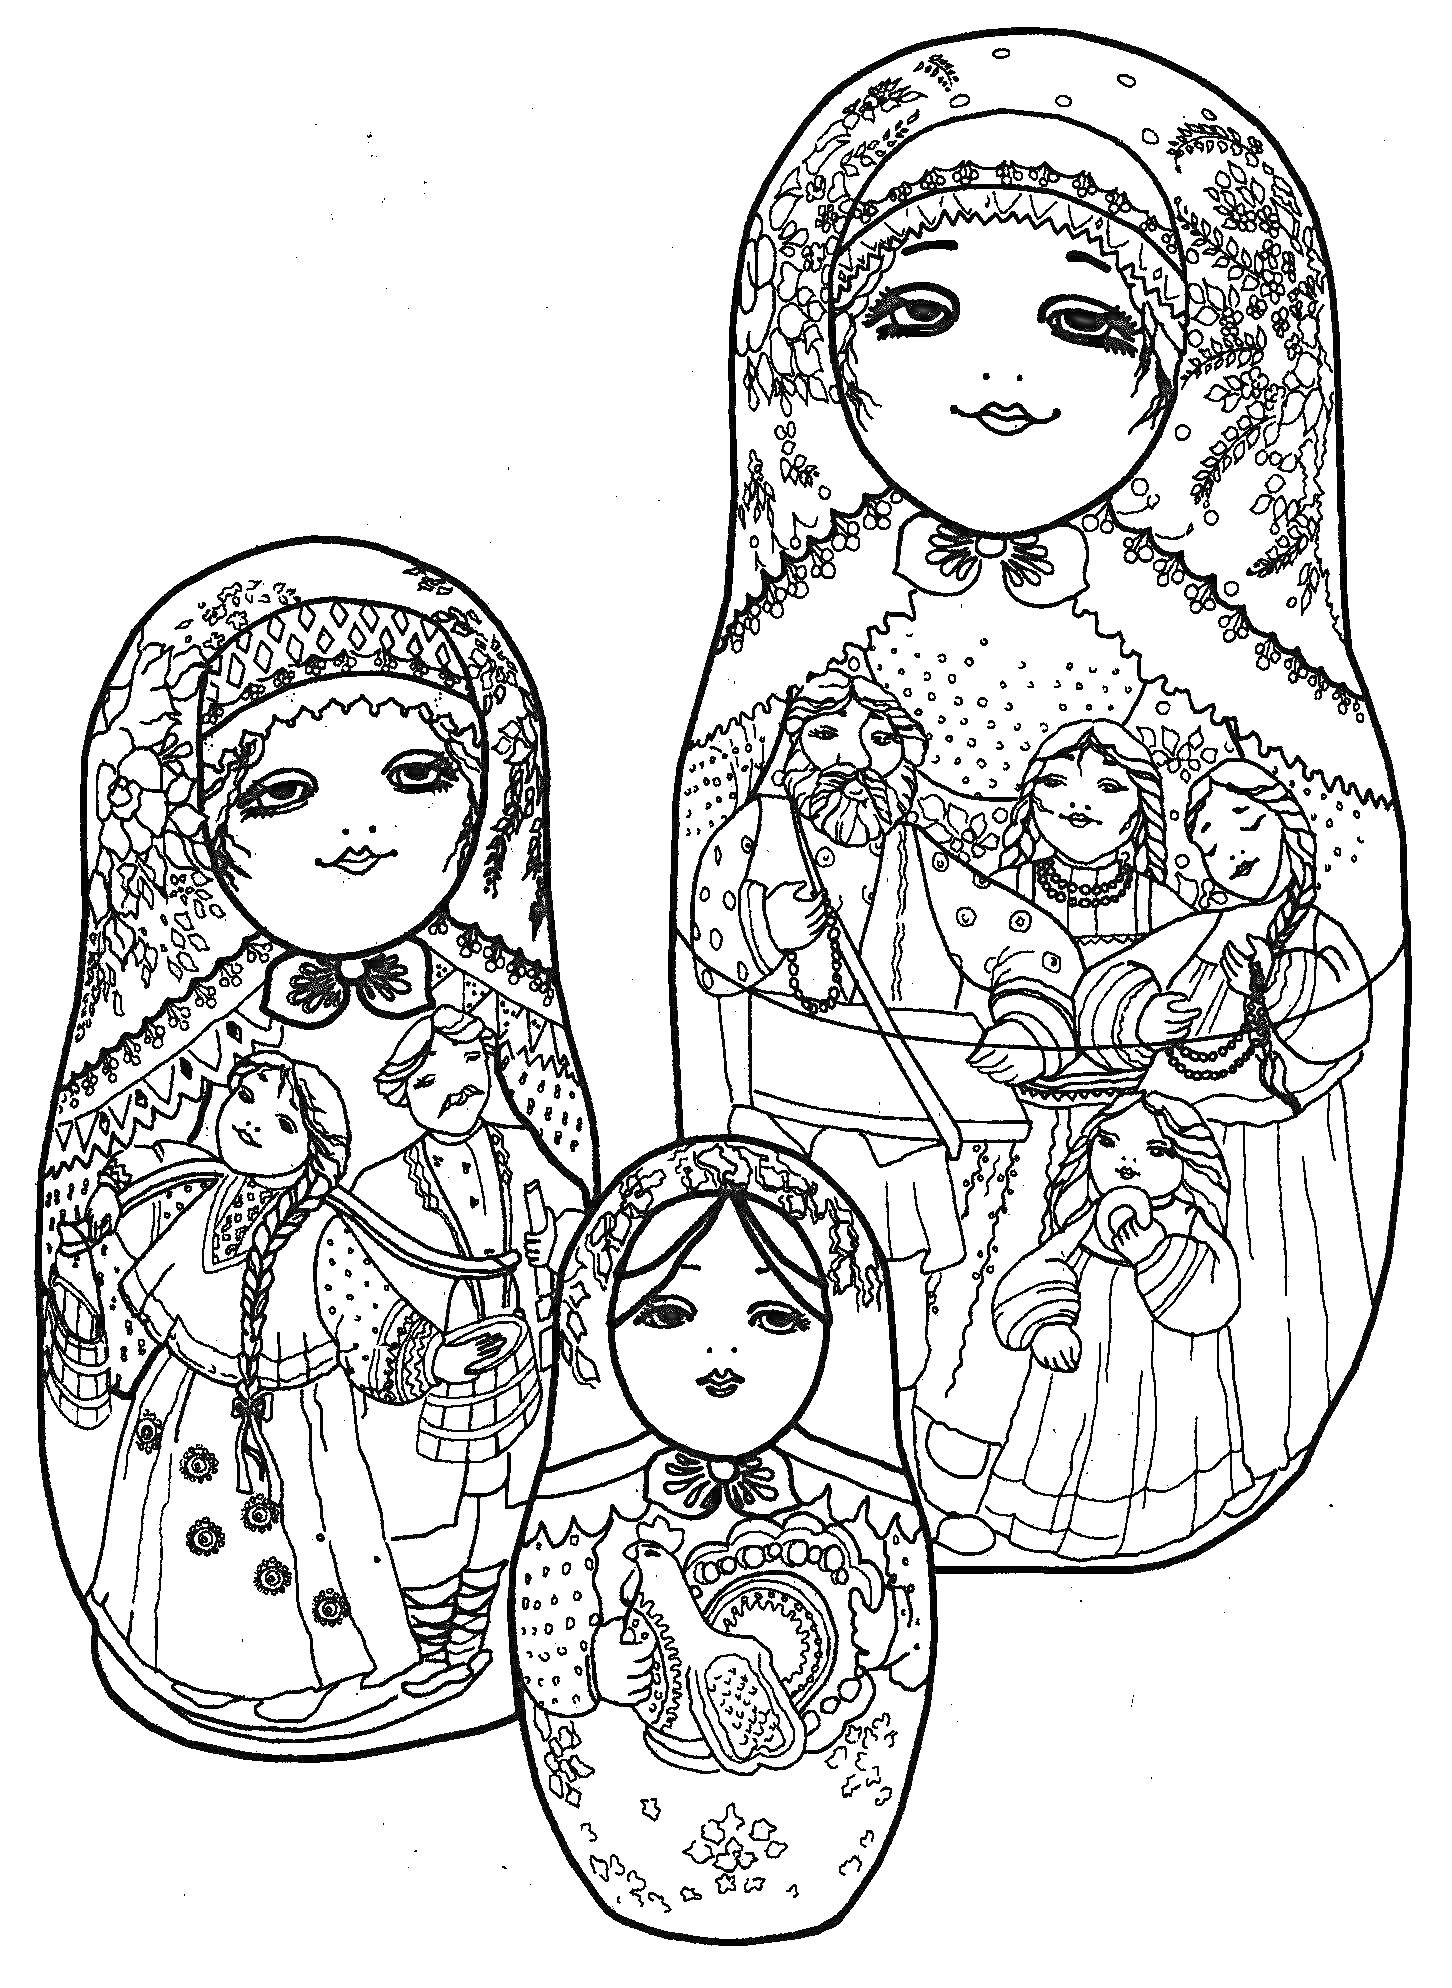 Раскраска Раскраска с тремя матрешками, изображающими традиционные русские народные костюмы и сцены.